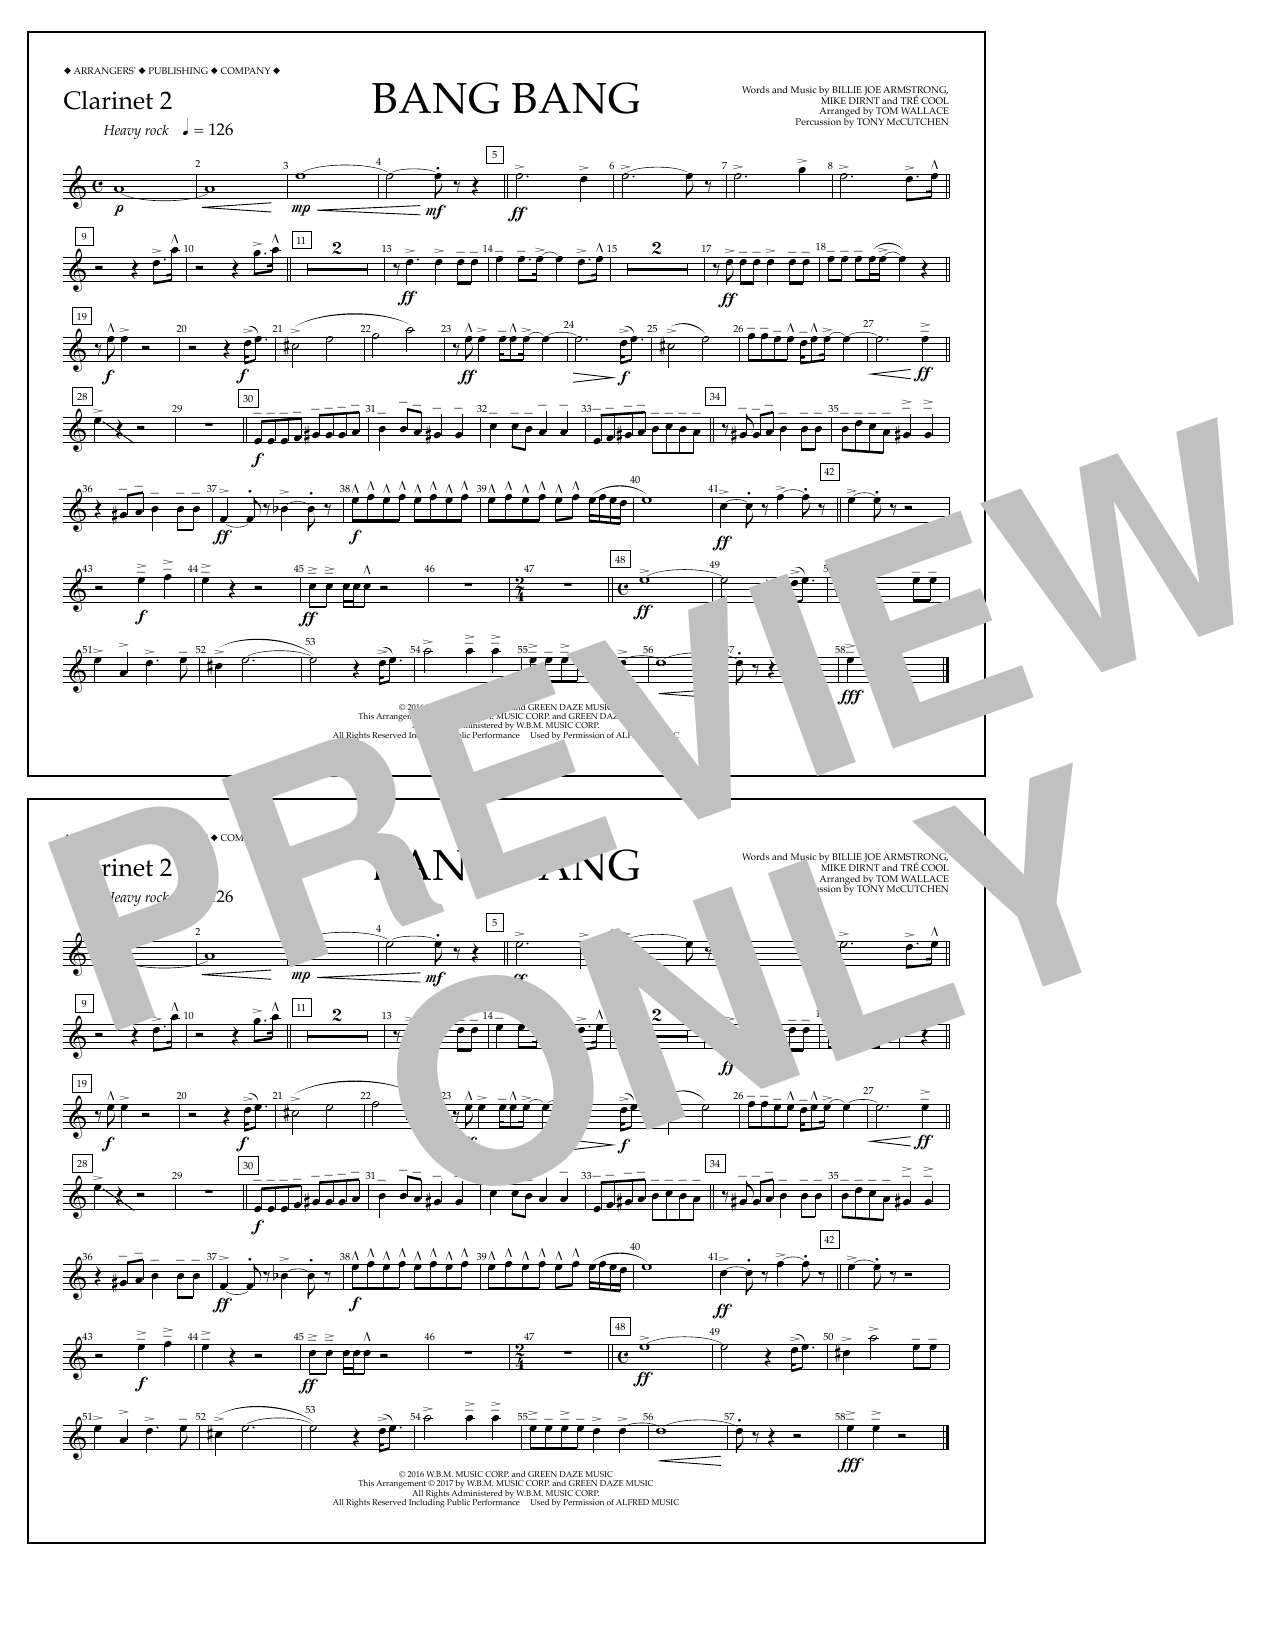 Tom Wallace Bang Bang - Clarinet 2 Sheet Music Notes & Chords for Marching Band - Download or Print PDF